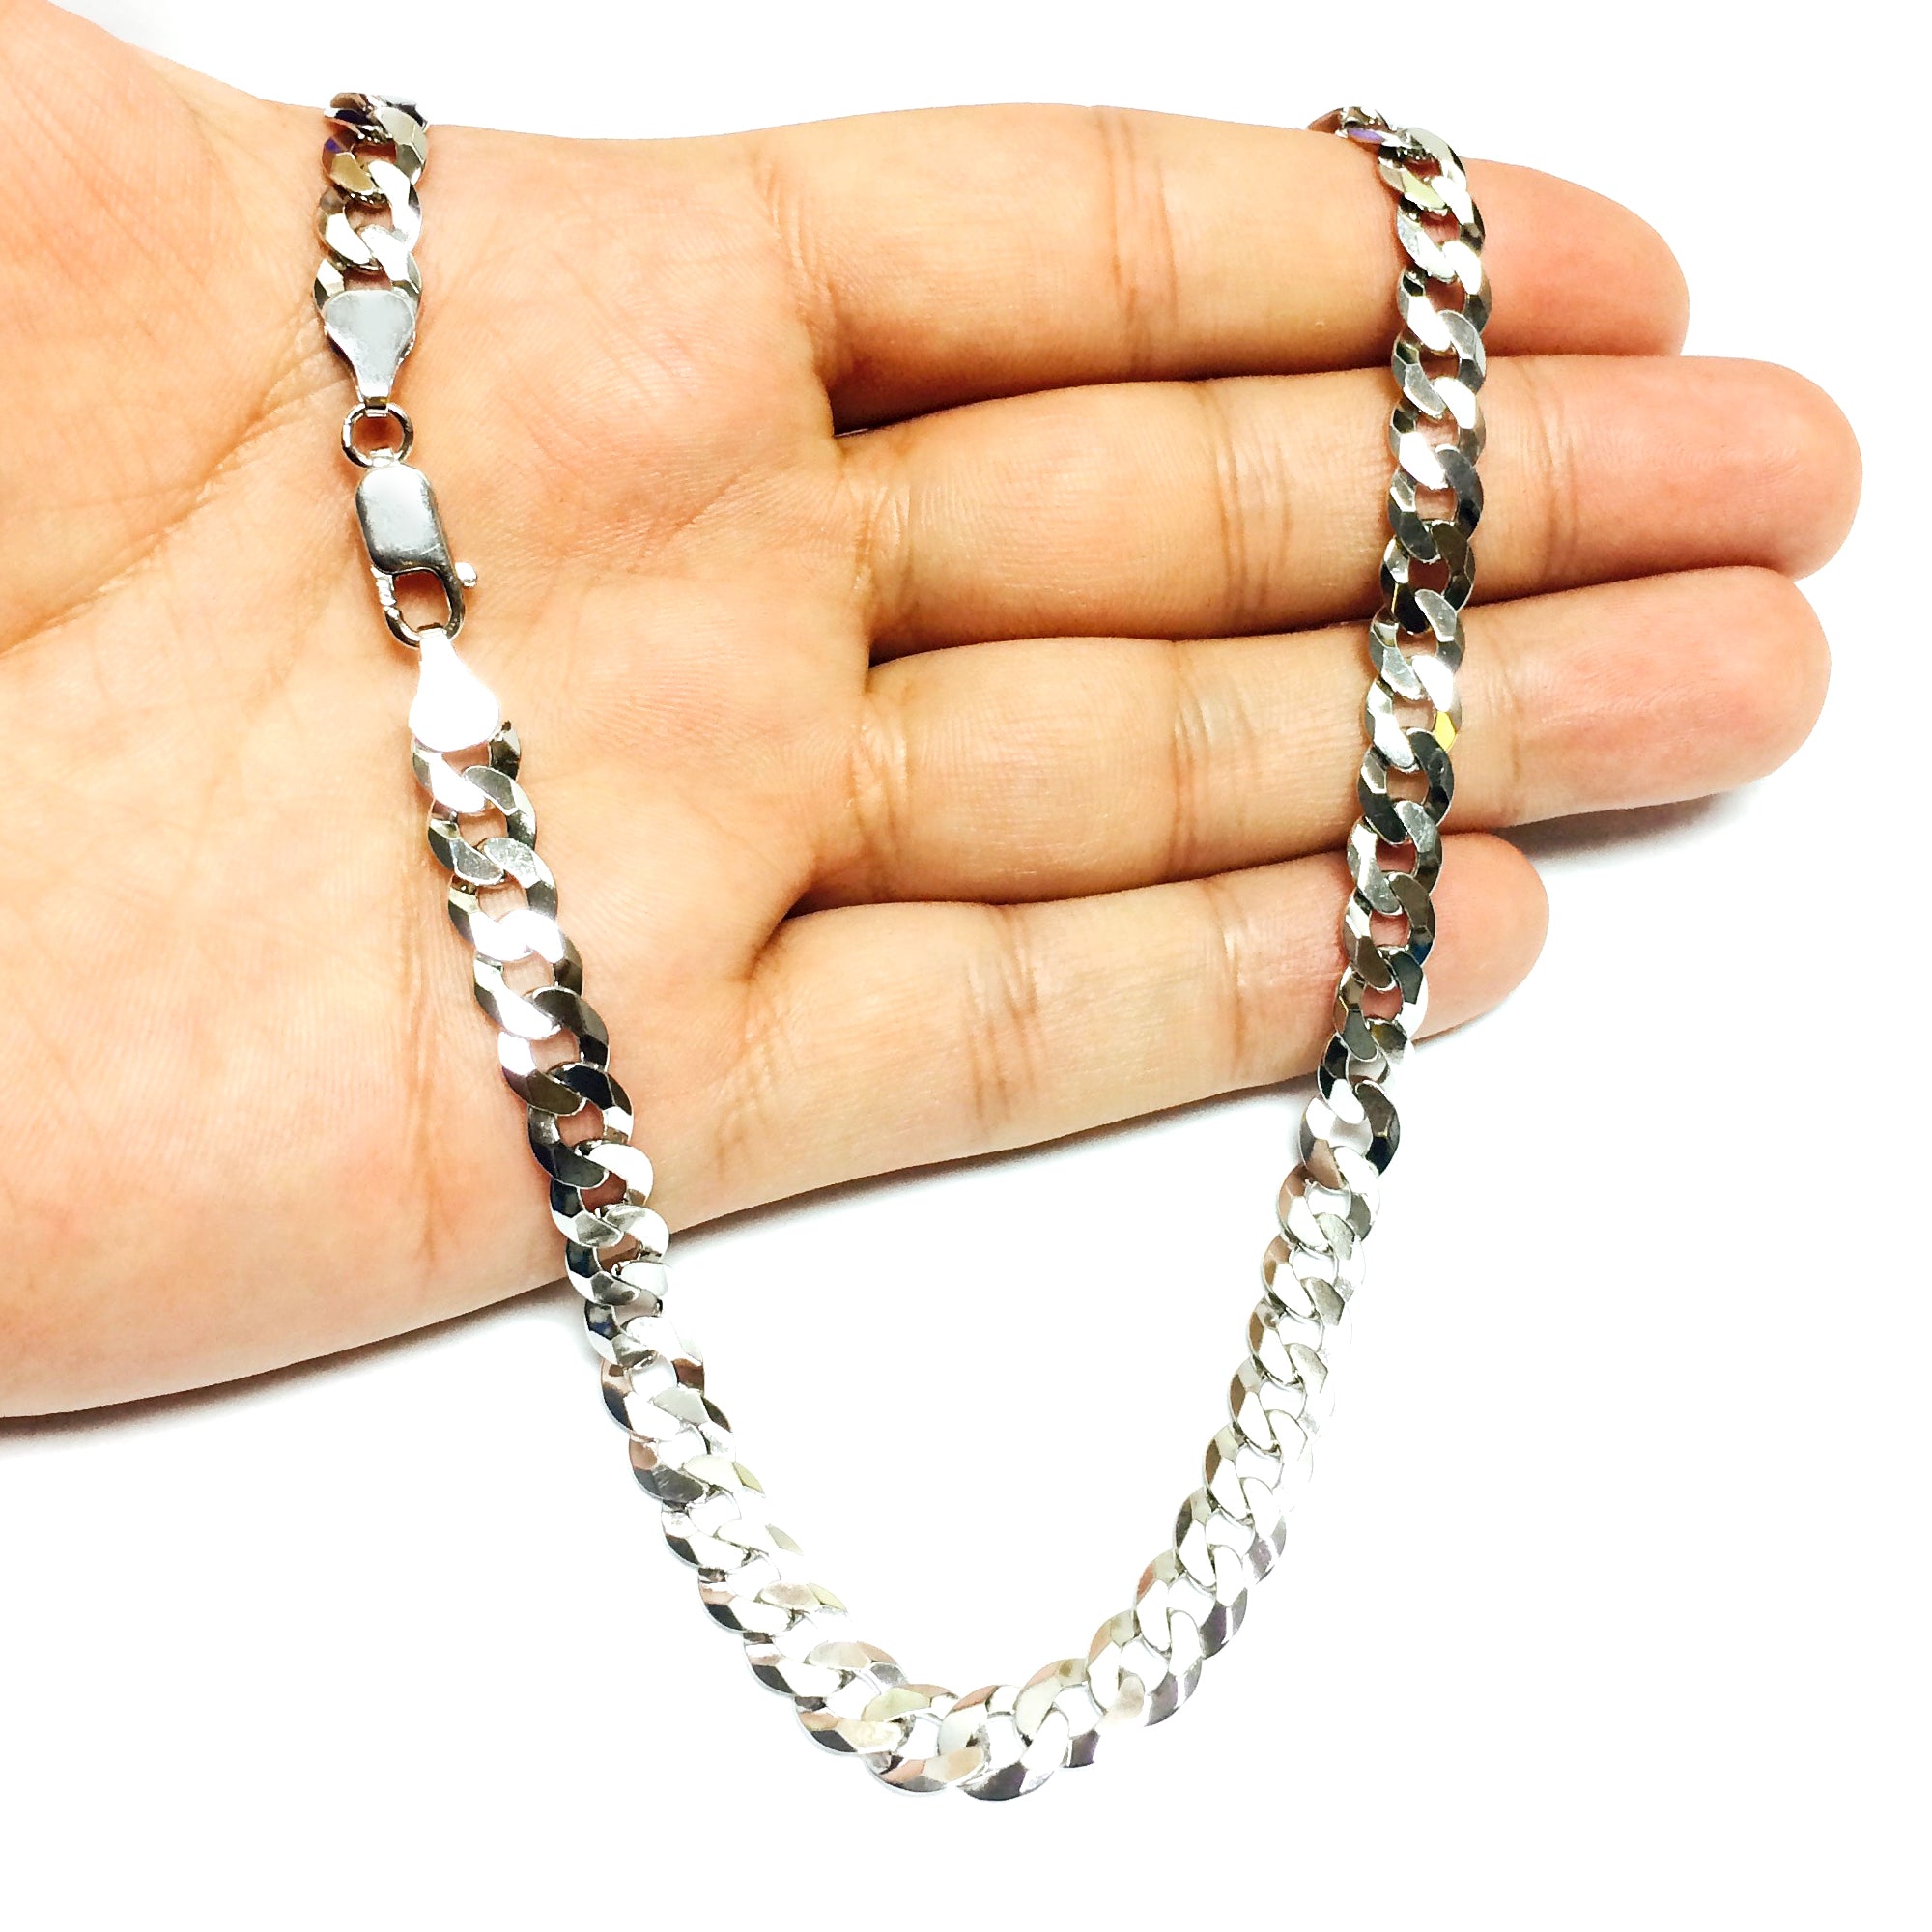 Sterling Silver Rhodium Plated Curb Chain Halsband, 7,0 mm fina designersmycken för män och kvinnor